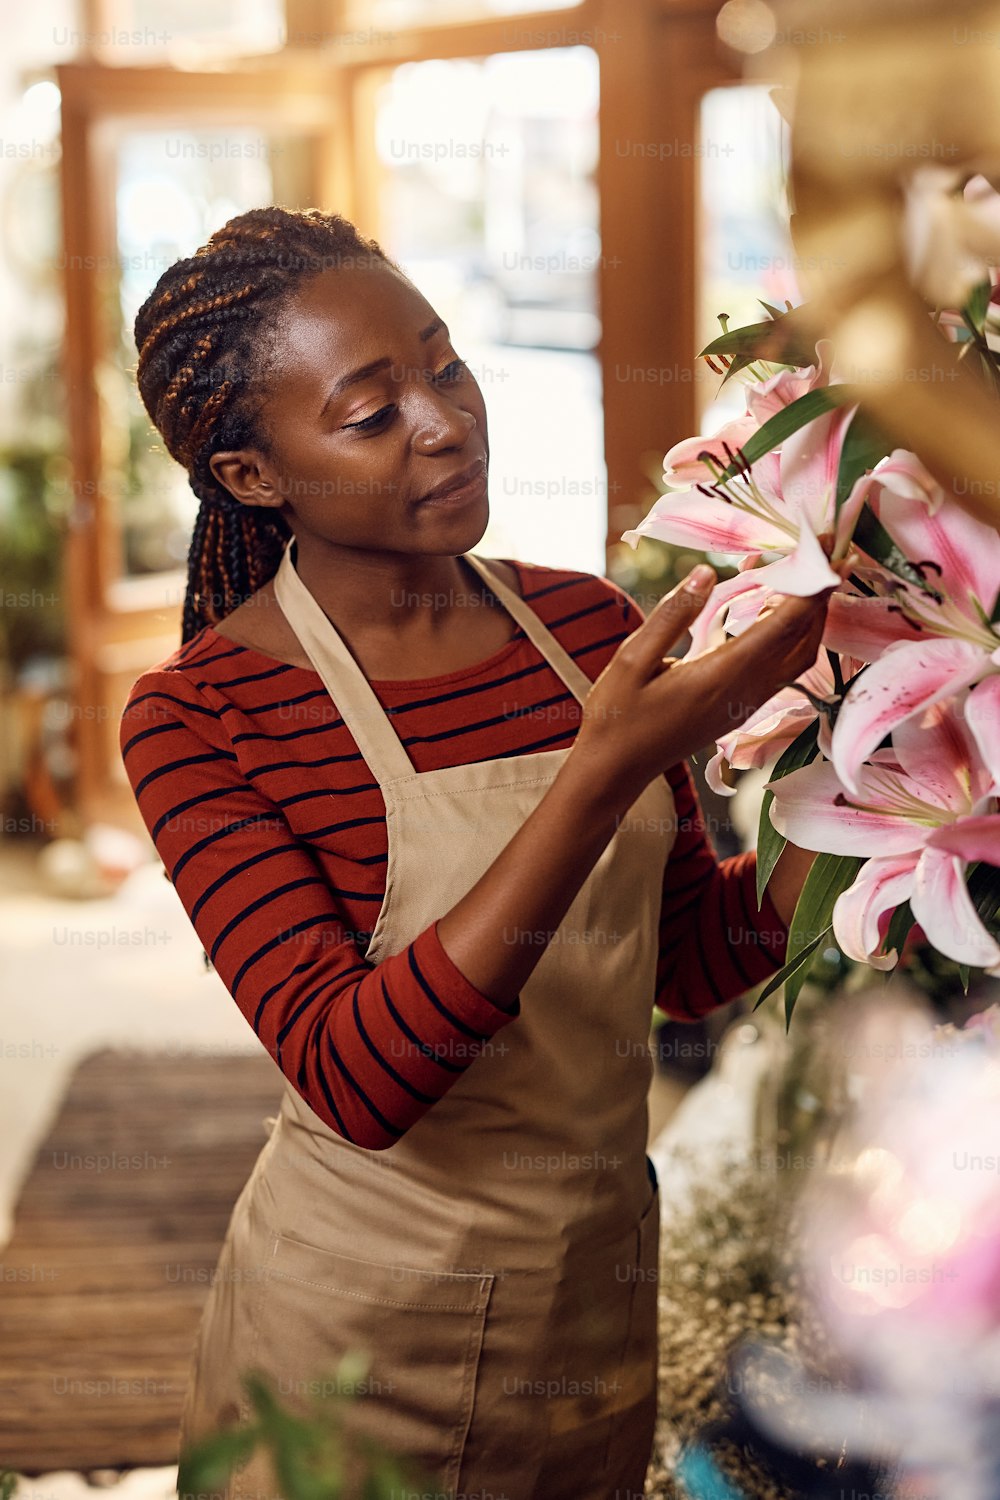 Femme afro-américaine heureuse appréciant de travailler dans son magasin de fleurs.